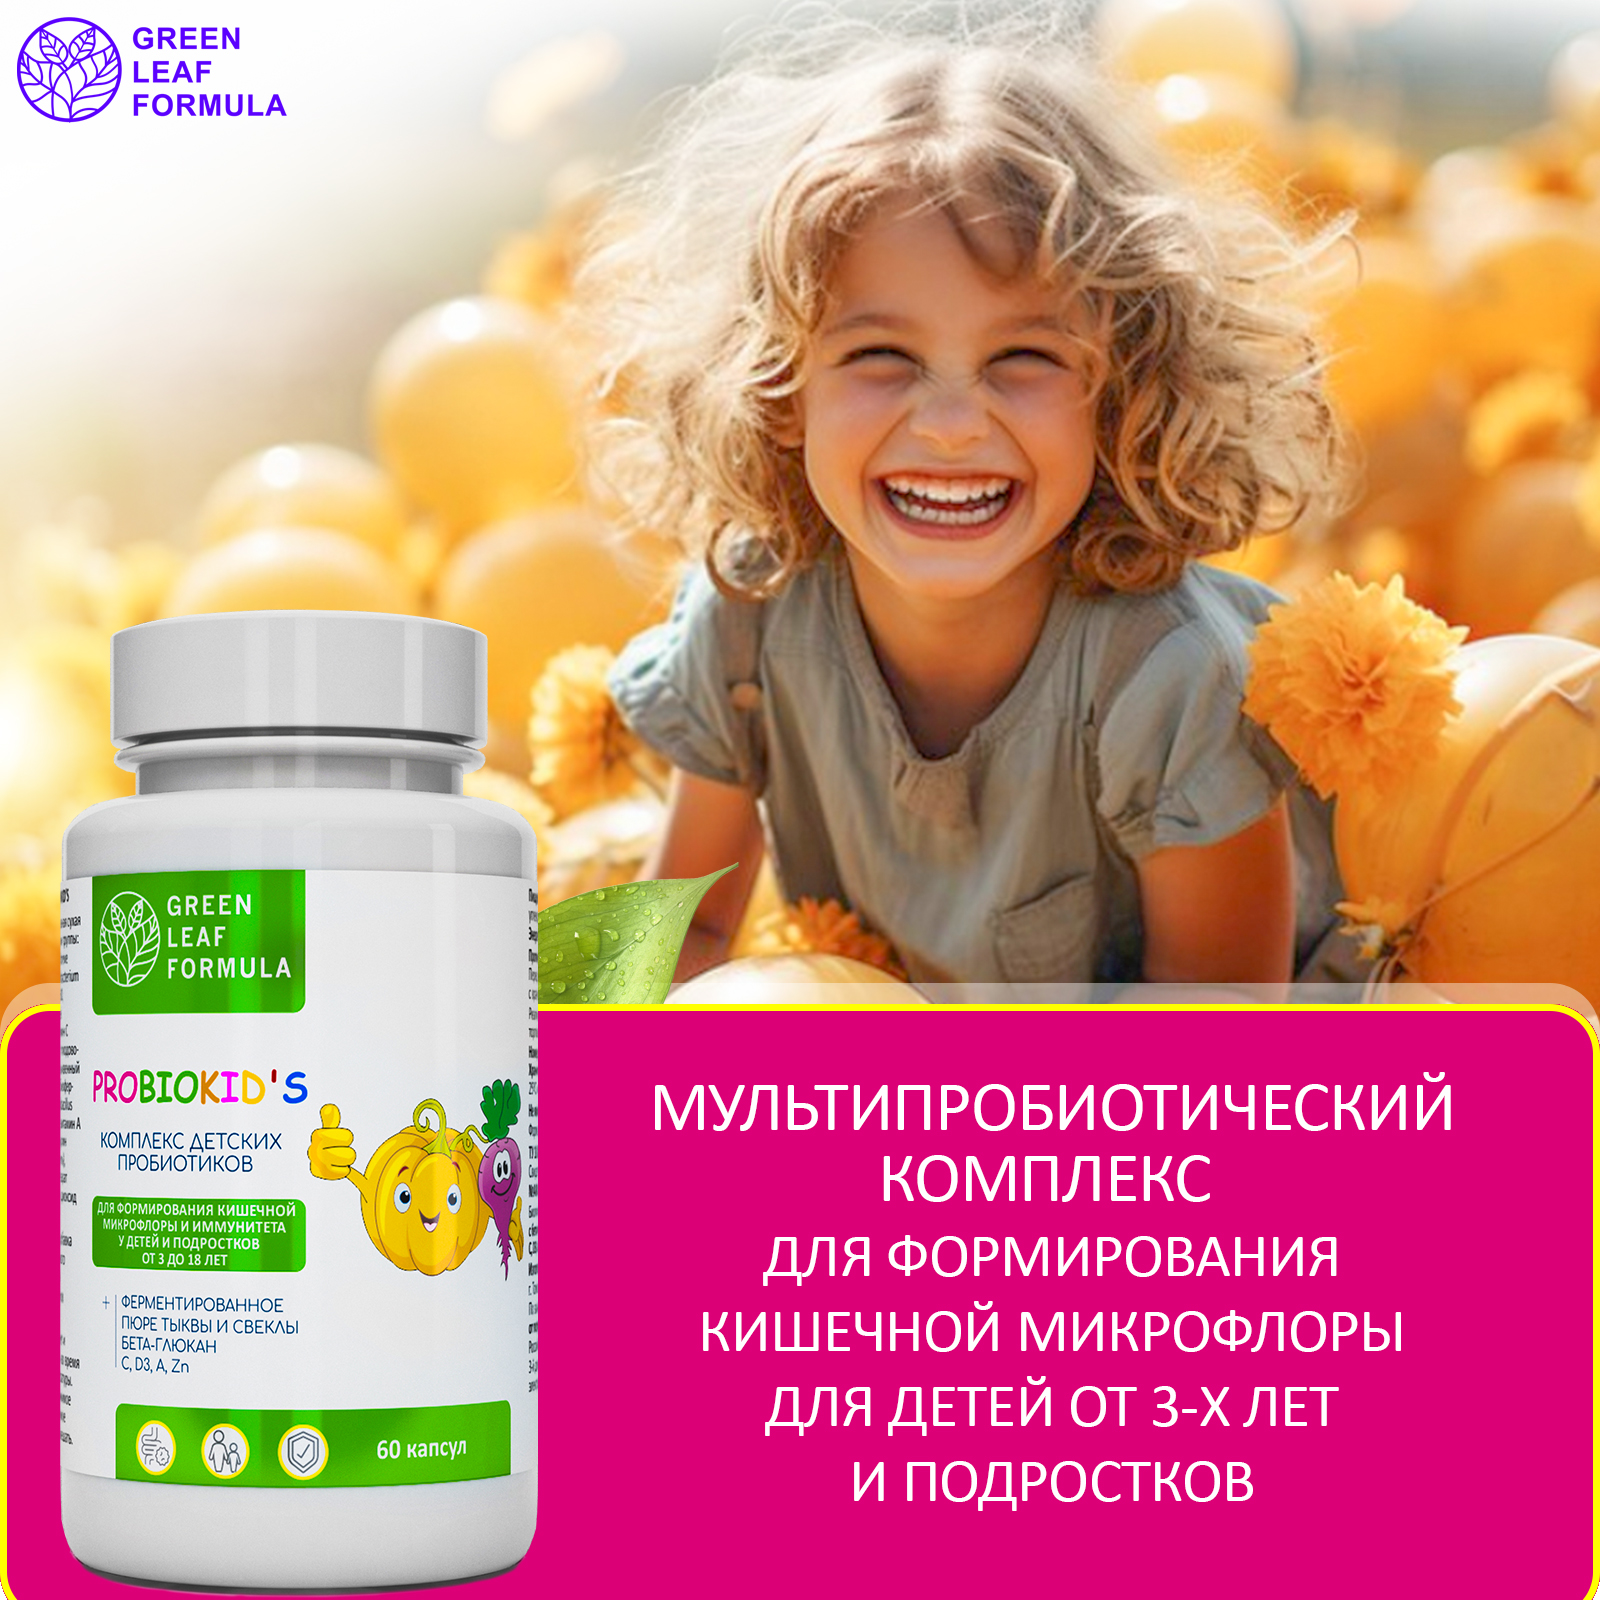 Детский пробиотик Green Leaf Formula витаминный комплекс для детей от 3 лет 60 капсул - фото 5